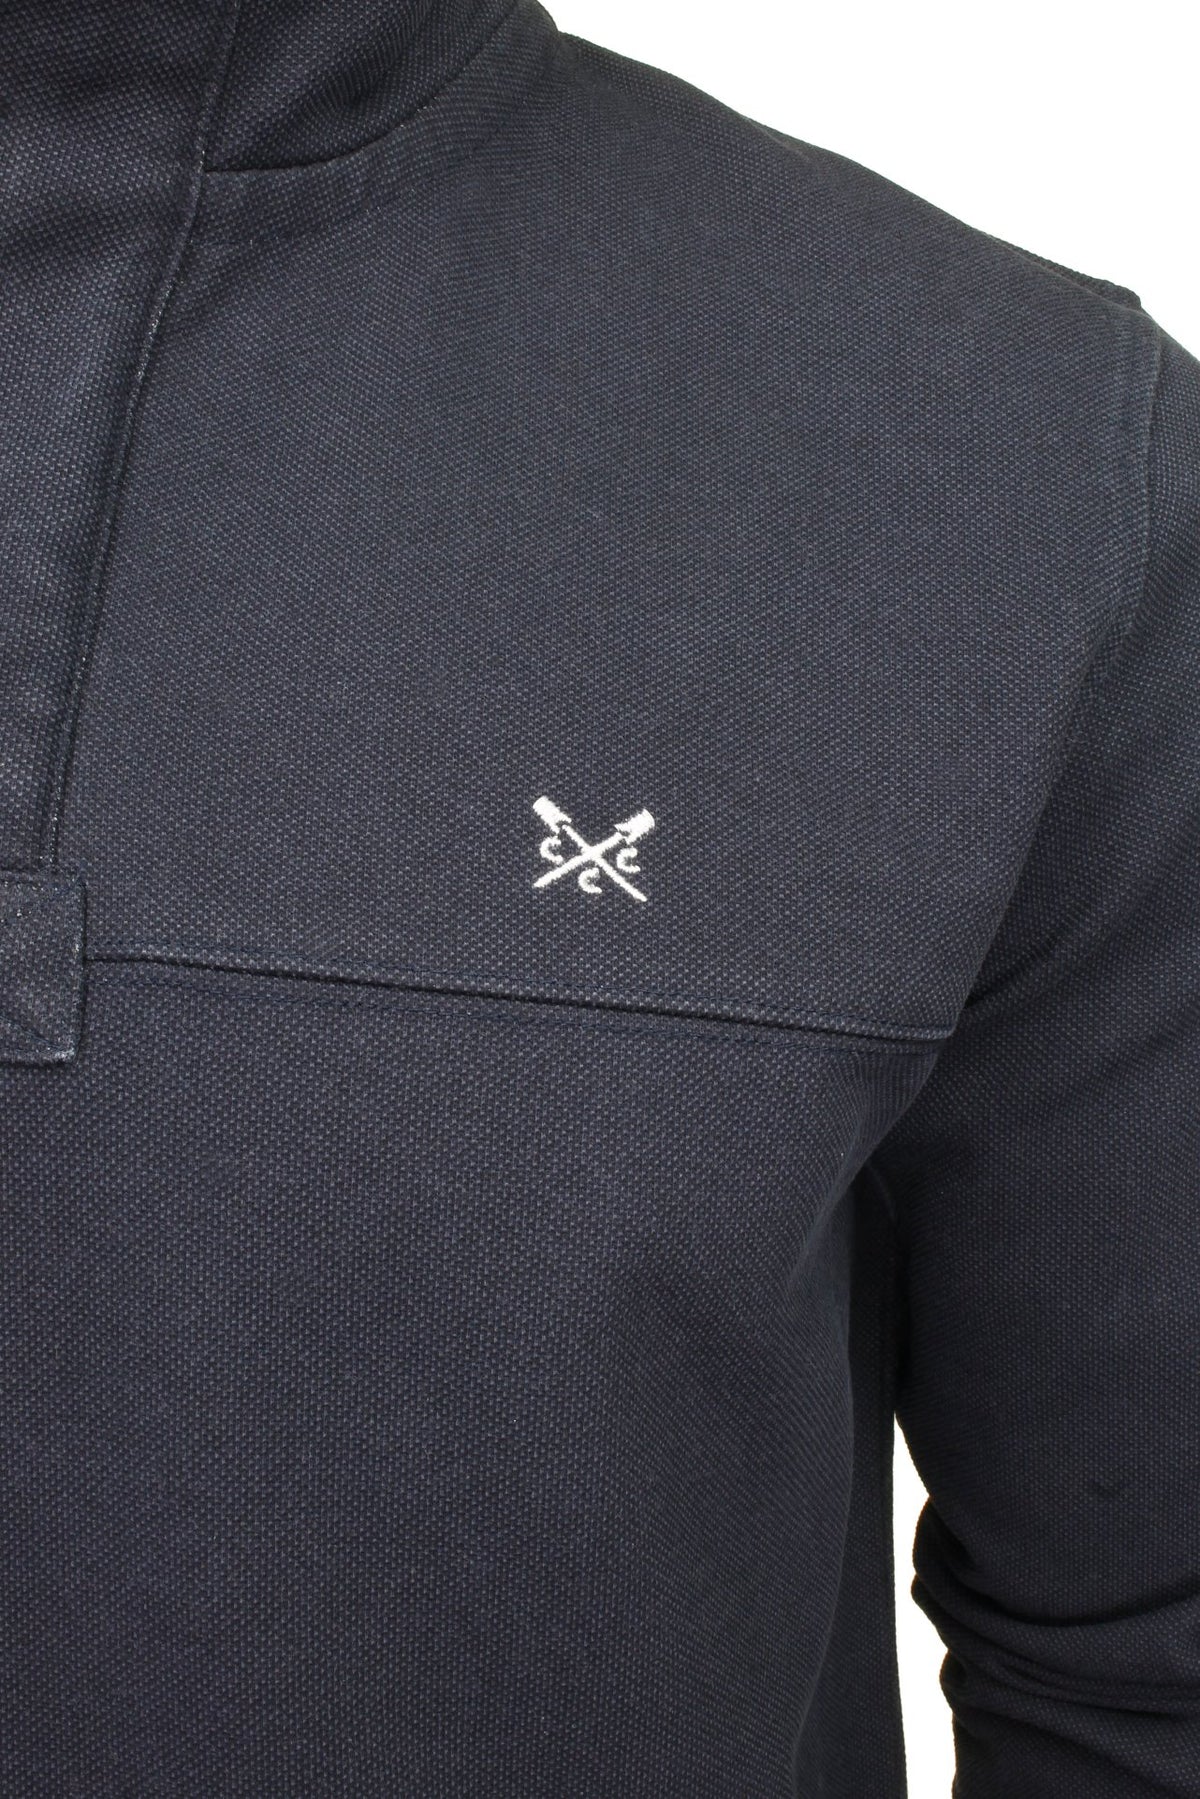 Crew Clothing Mens Padstow Pique 1/4 Zip Sweatshirt, 02, Mzd001, Navy